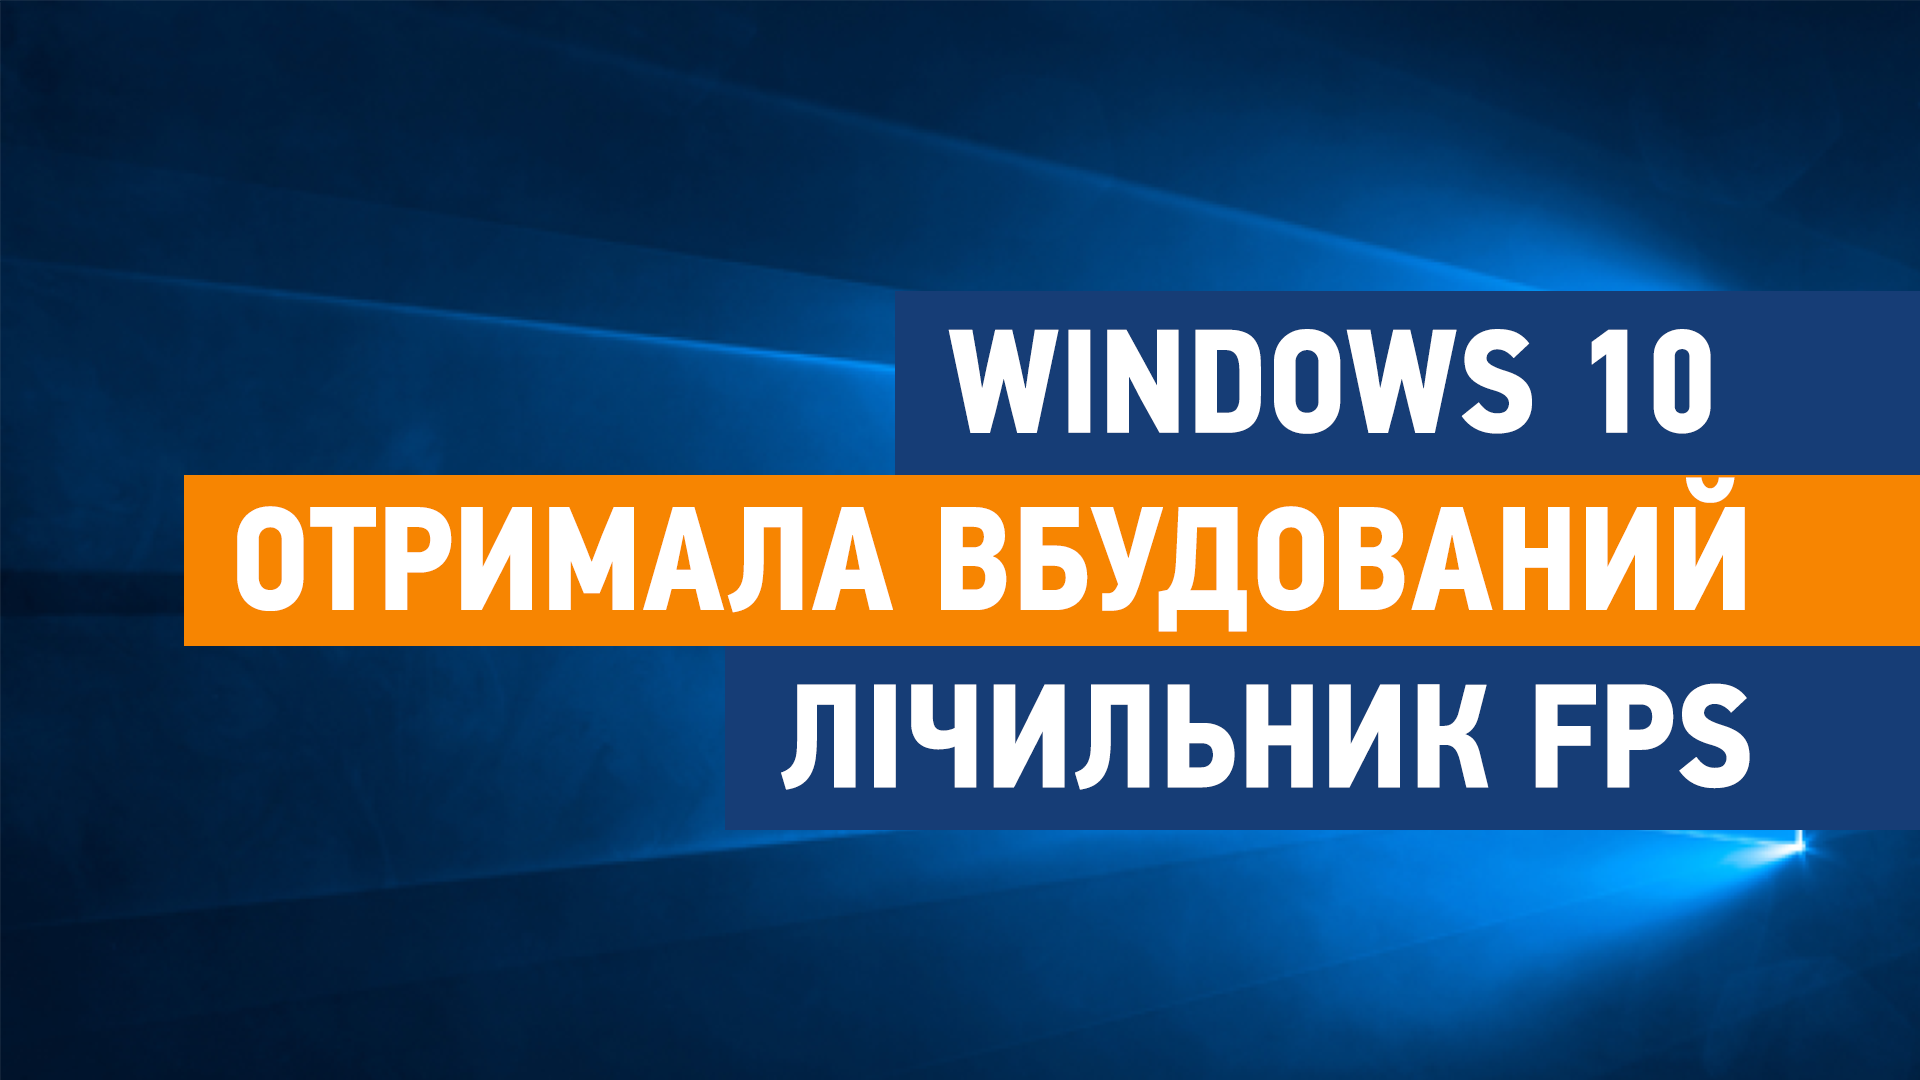 Windows 10 отримала вбудований лічильник FPS